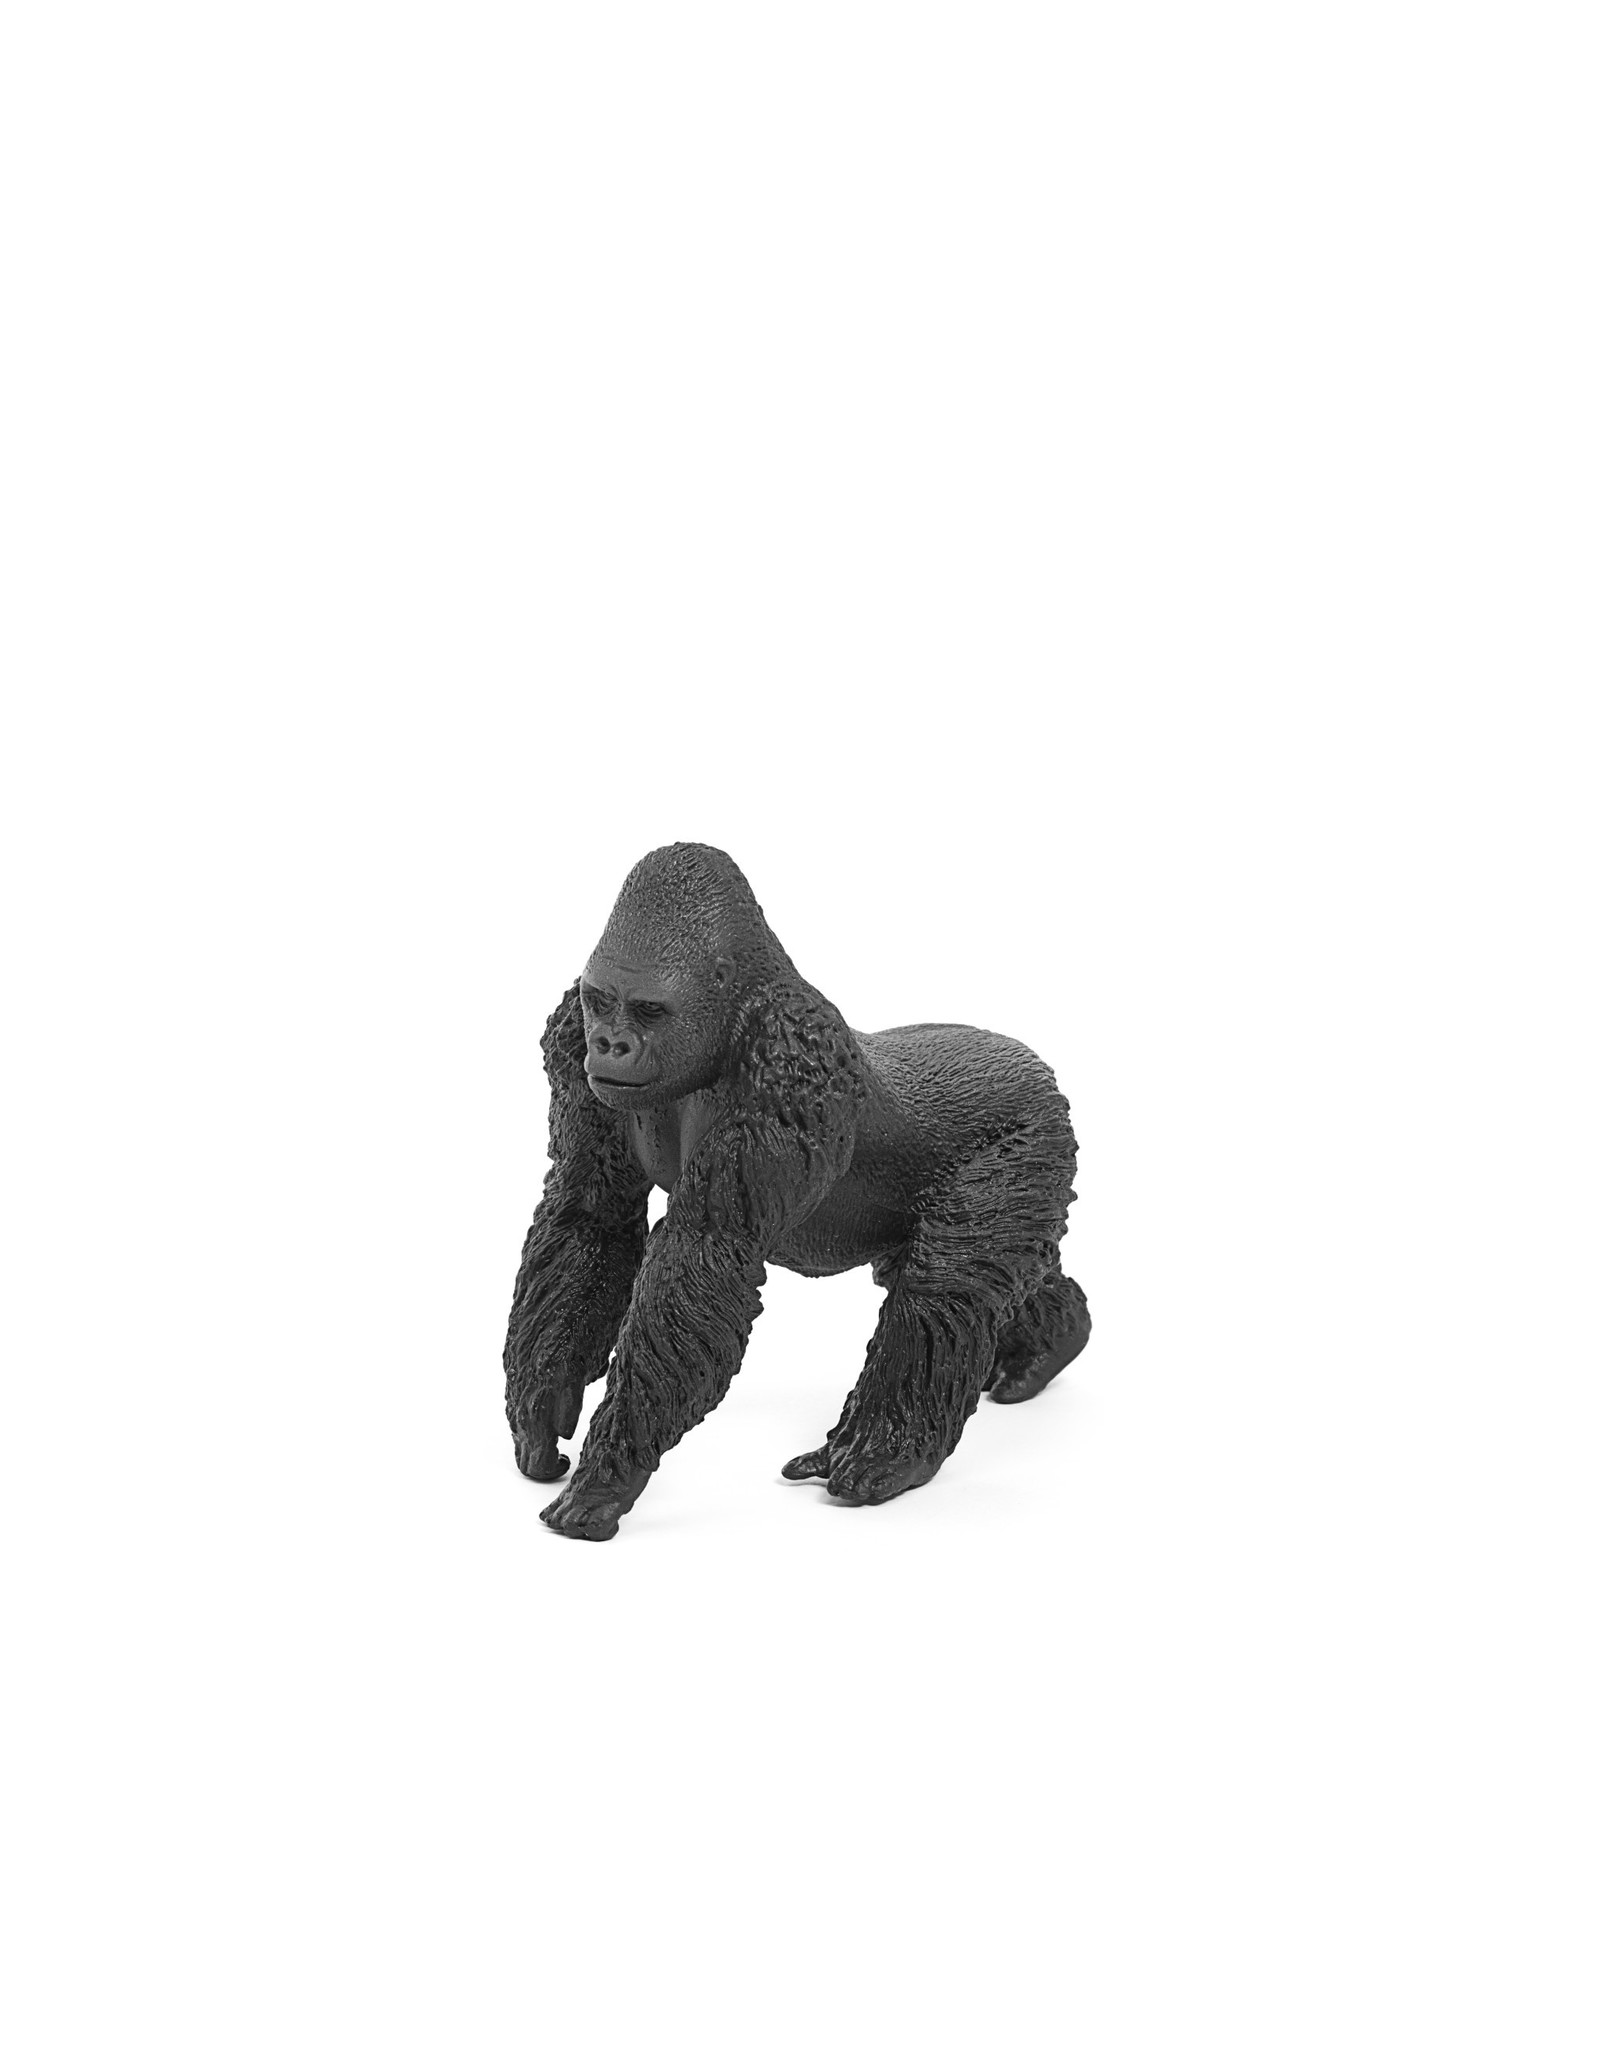 Schleich Male Gorilla